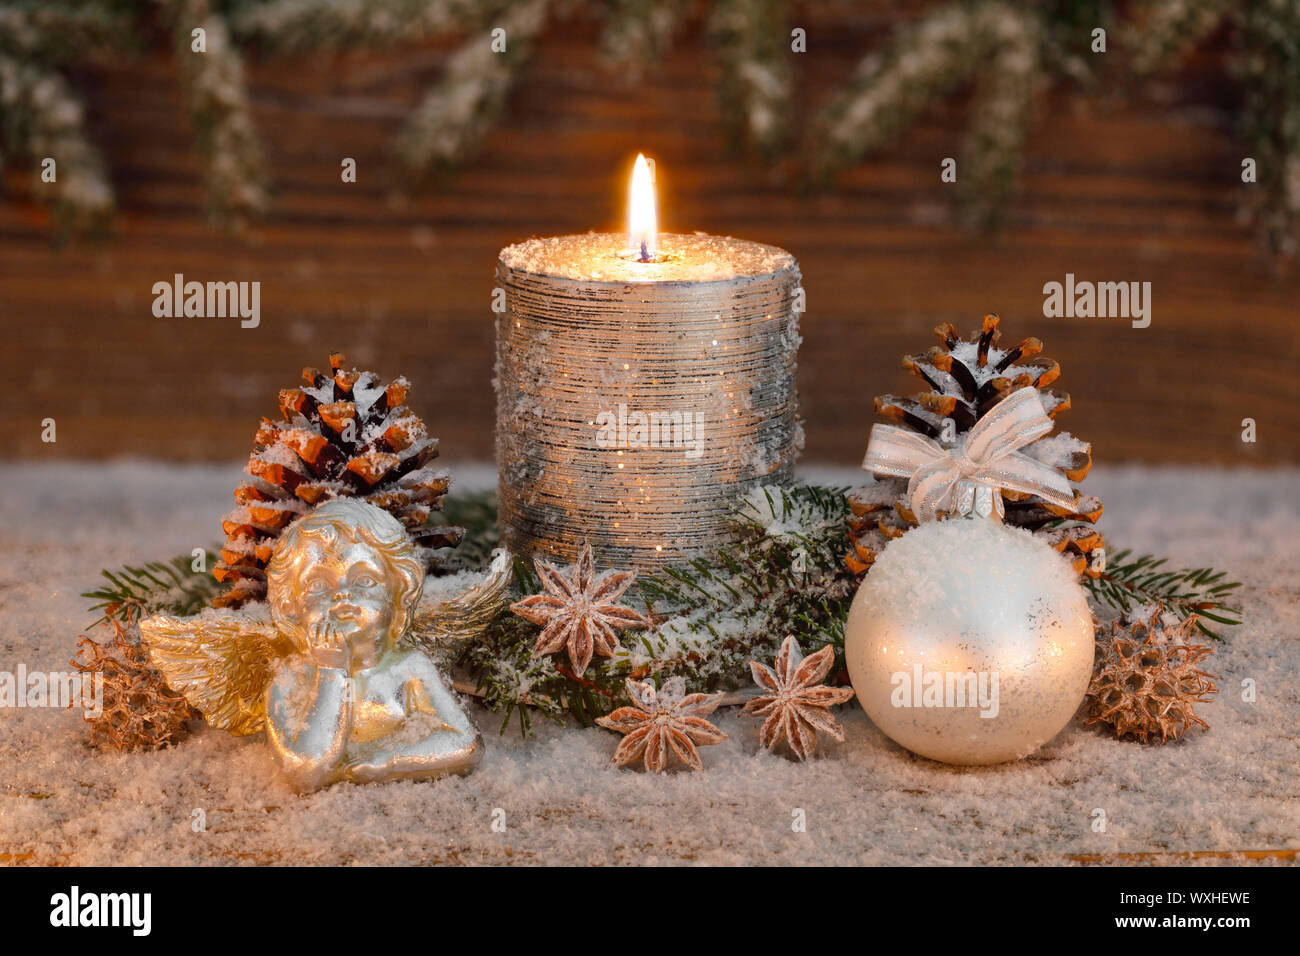 Weihnachten Dekoration: Brennende Kerze mit Engeln. Schweiz Stockfotografie  - Alamy